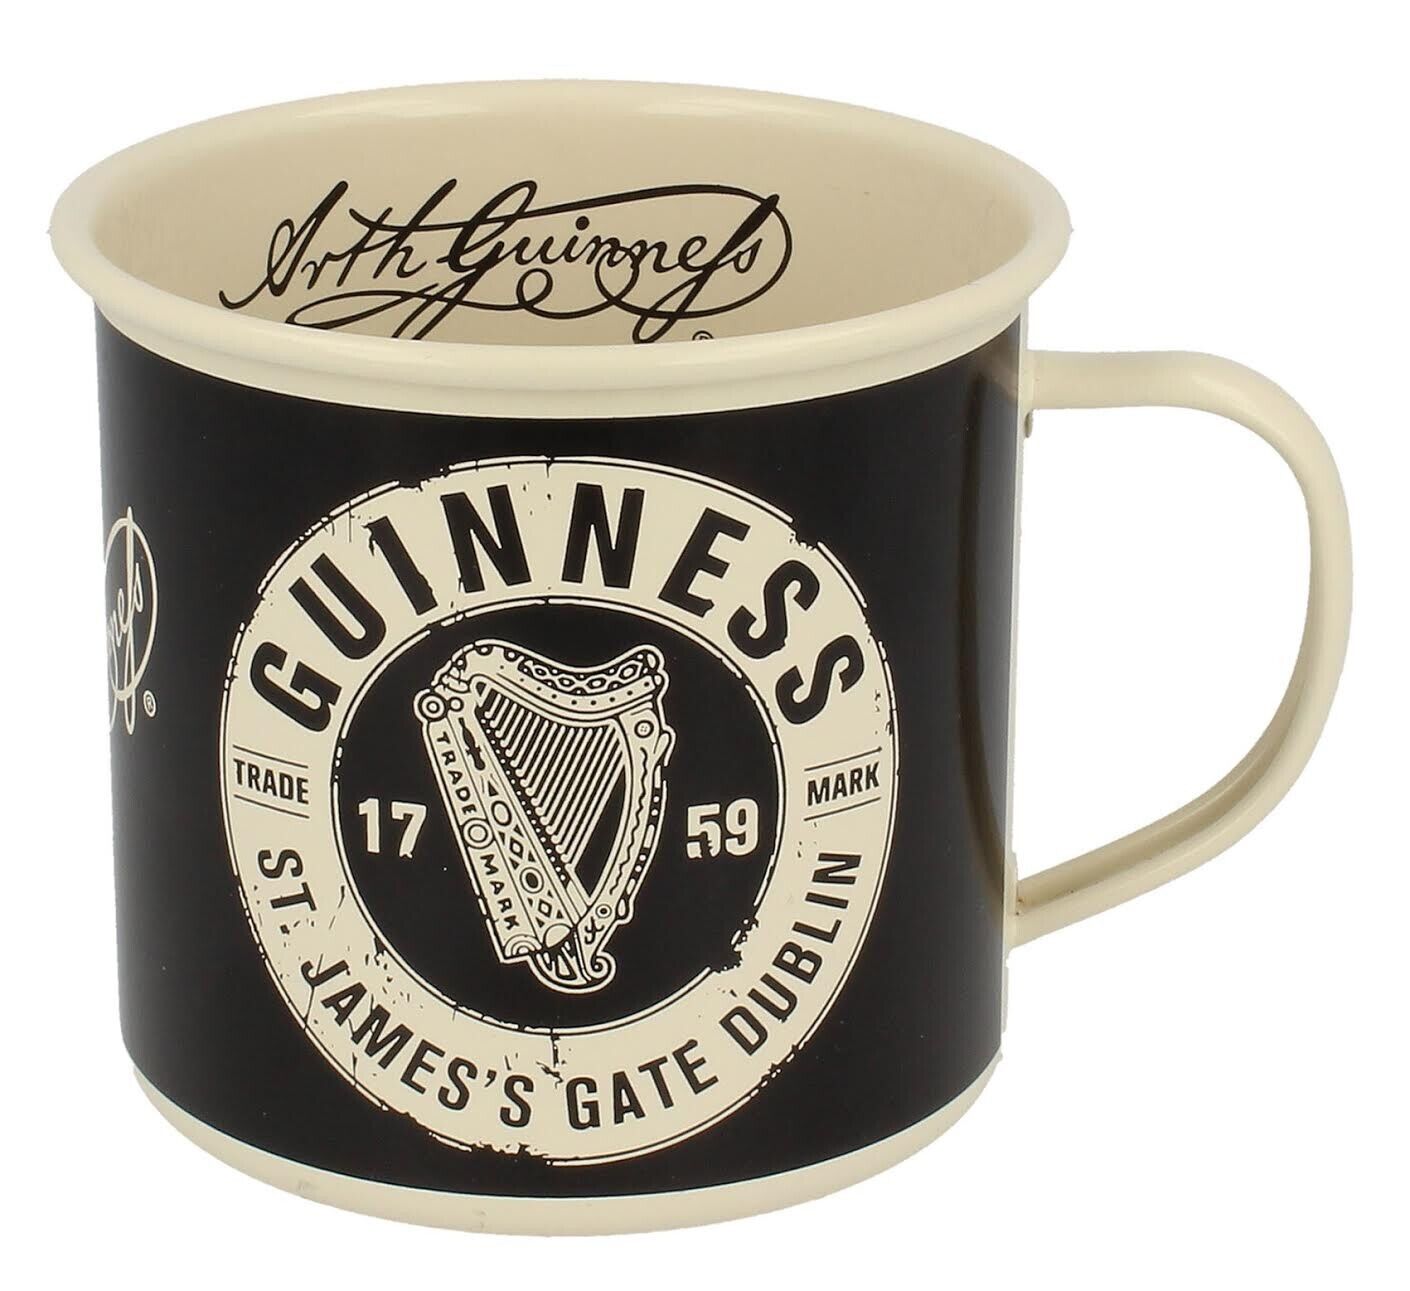 Guinness Enamel Mug, St James's Gate Label, Black & Cream